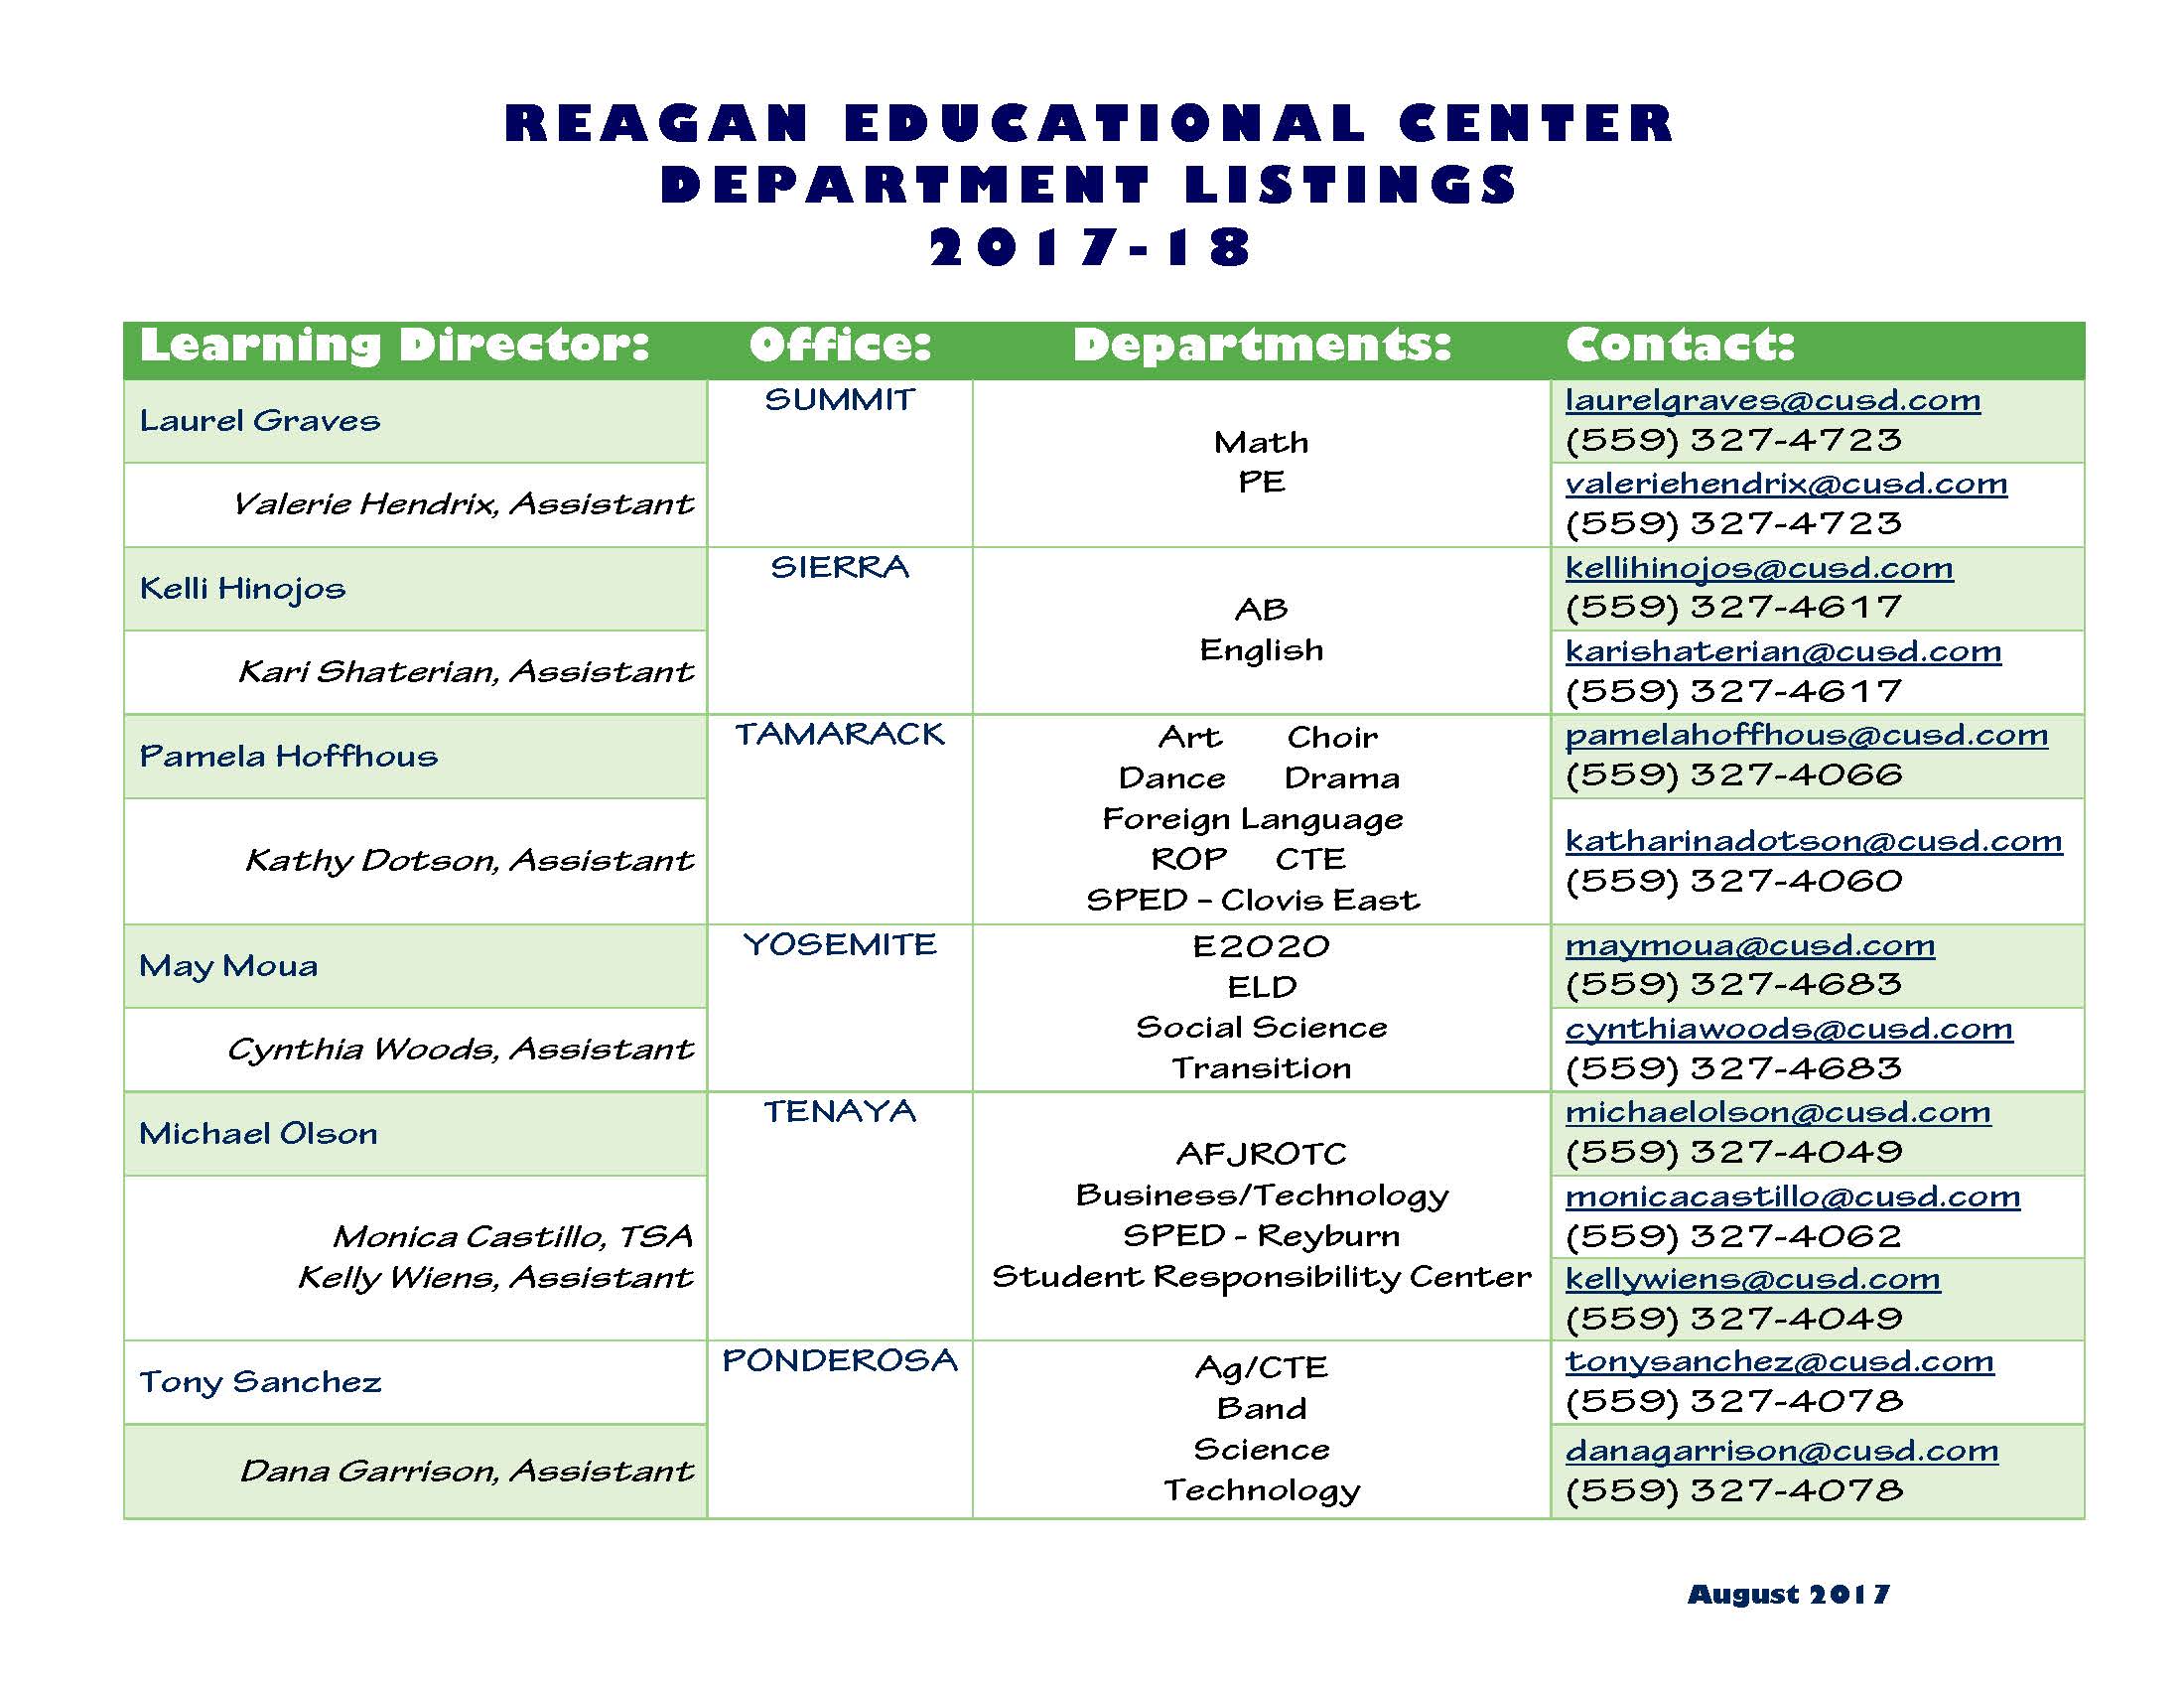 REC Department Listings